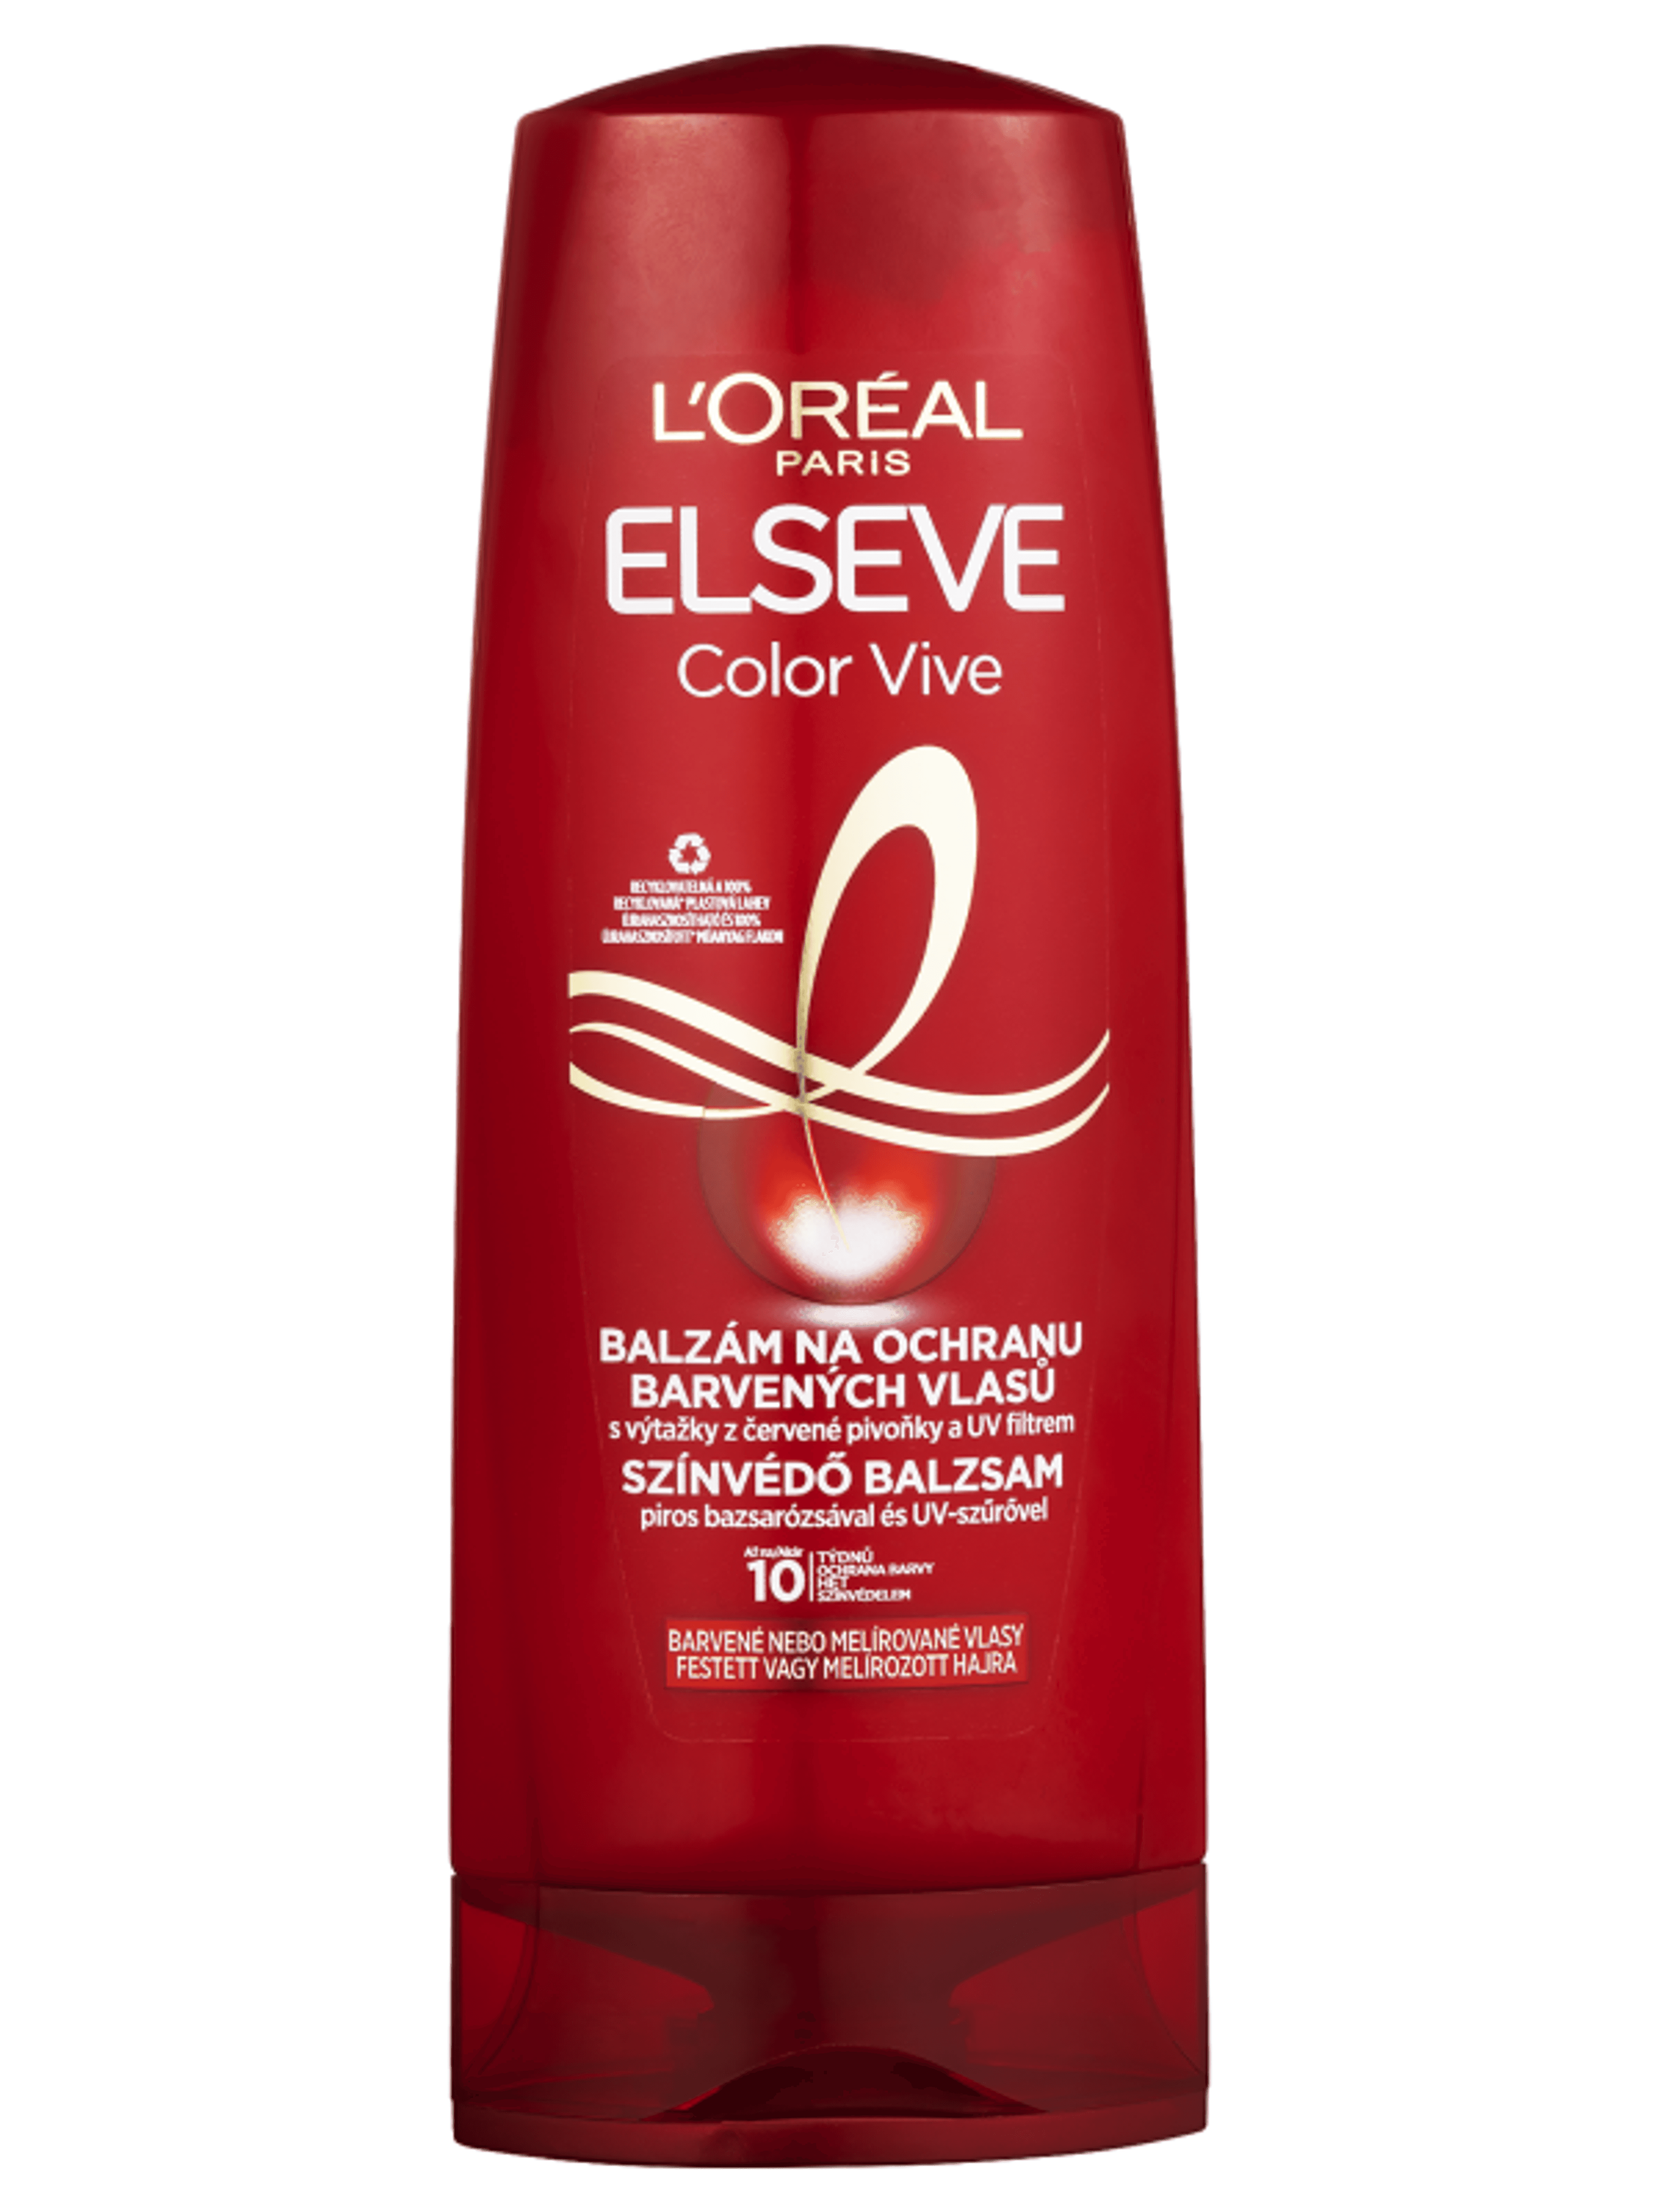 L'Oréal Paris Elseve Color-vive színvédő balzsam - 400 ml